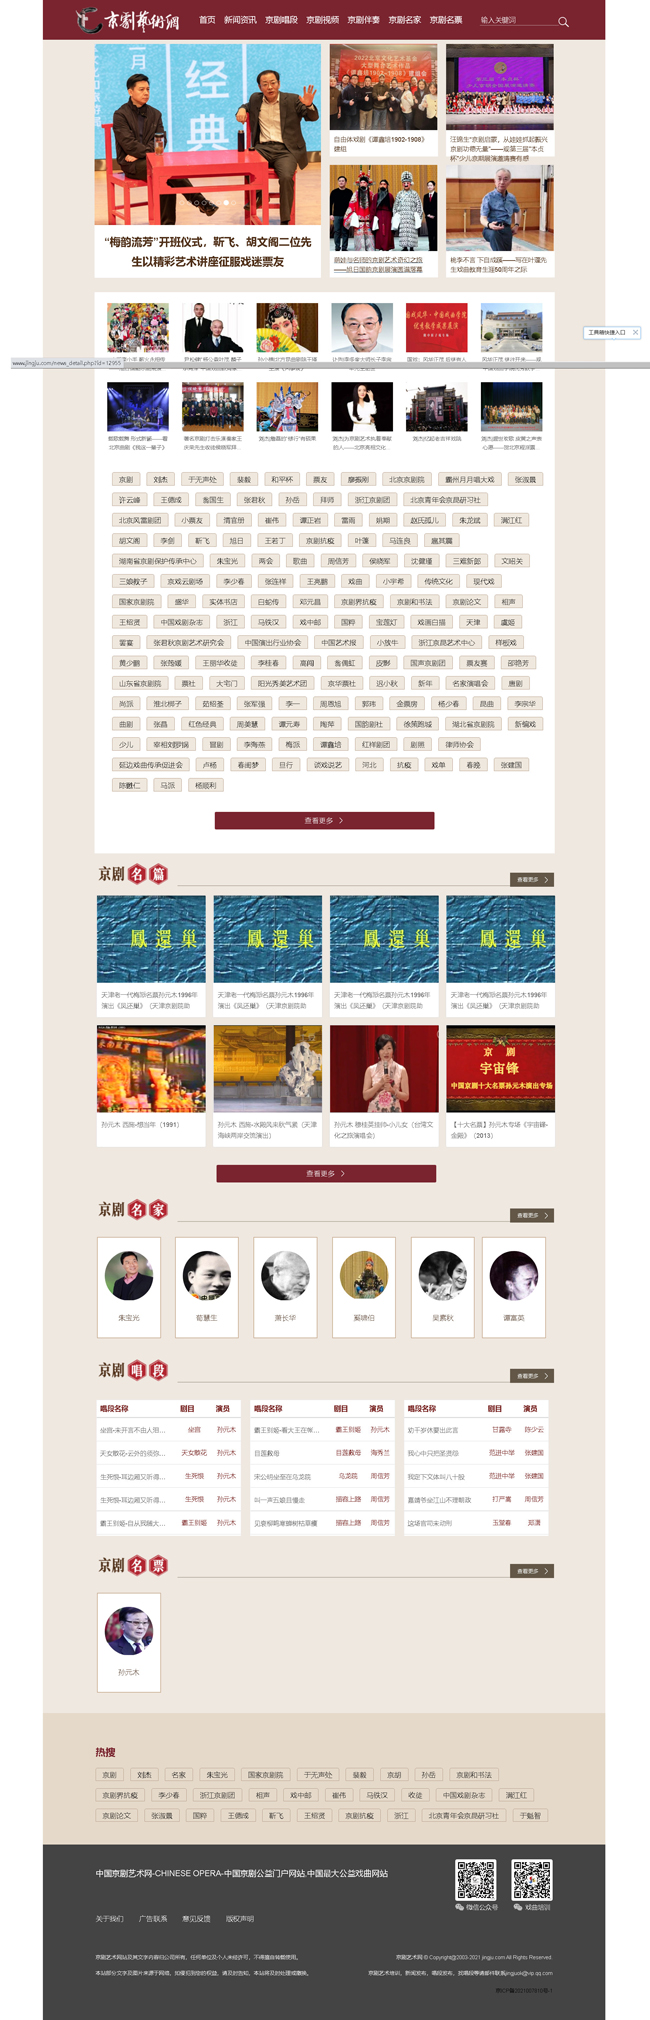 中国京剧艺术网-中国京剧公益门户网站,中国最大公益戏曲网站